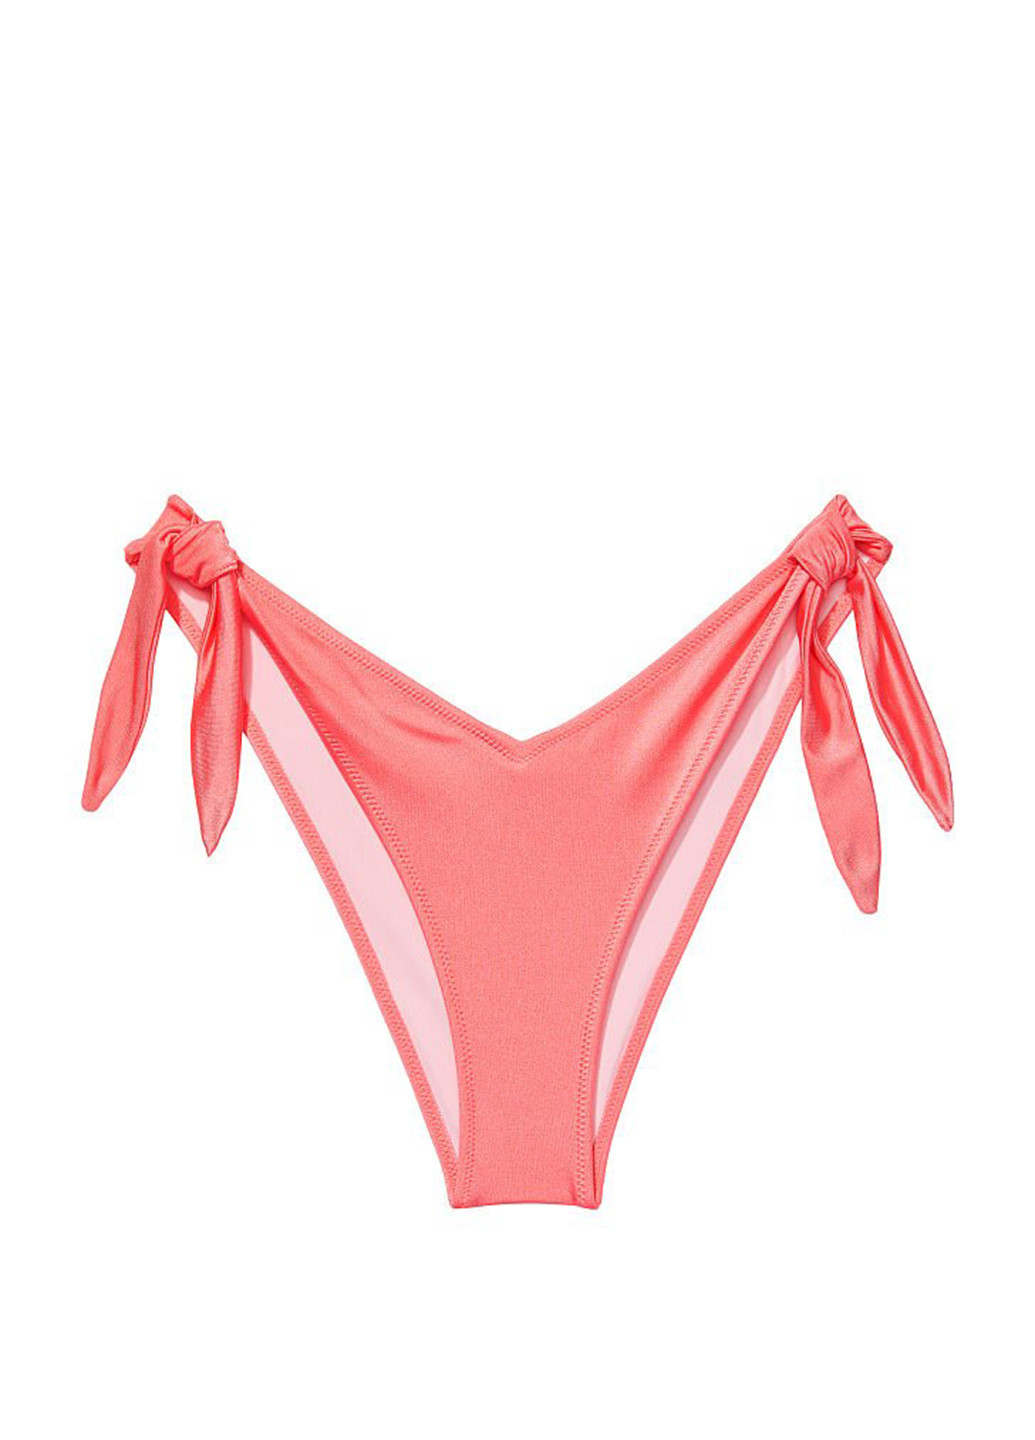 Рожевий демісезонний купальник (ліф, трусики) бандо, роздільний, халтер Victoria's Secret